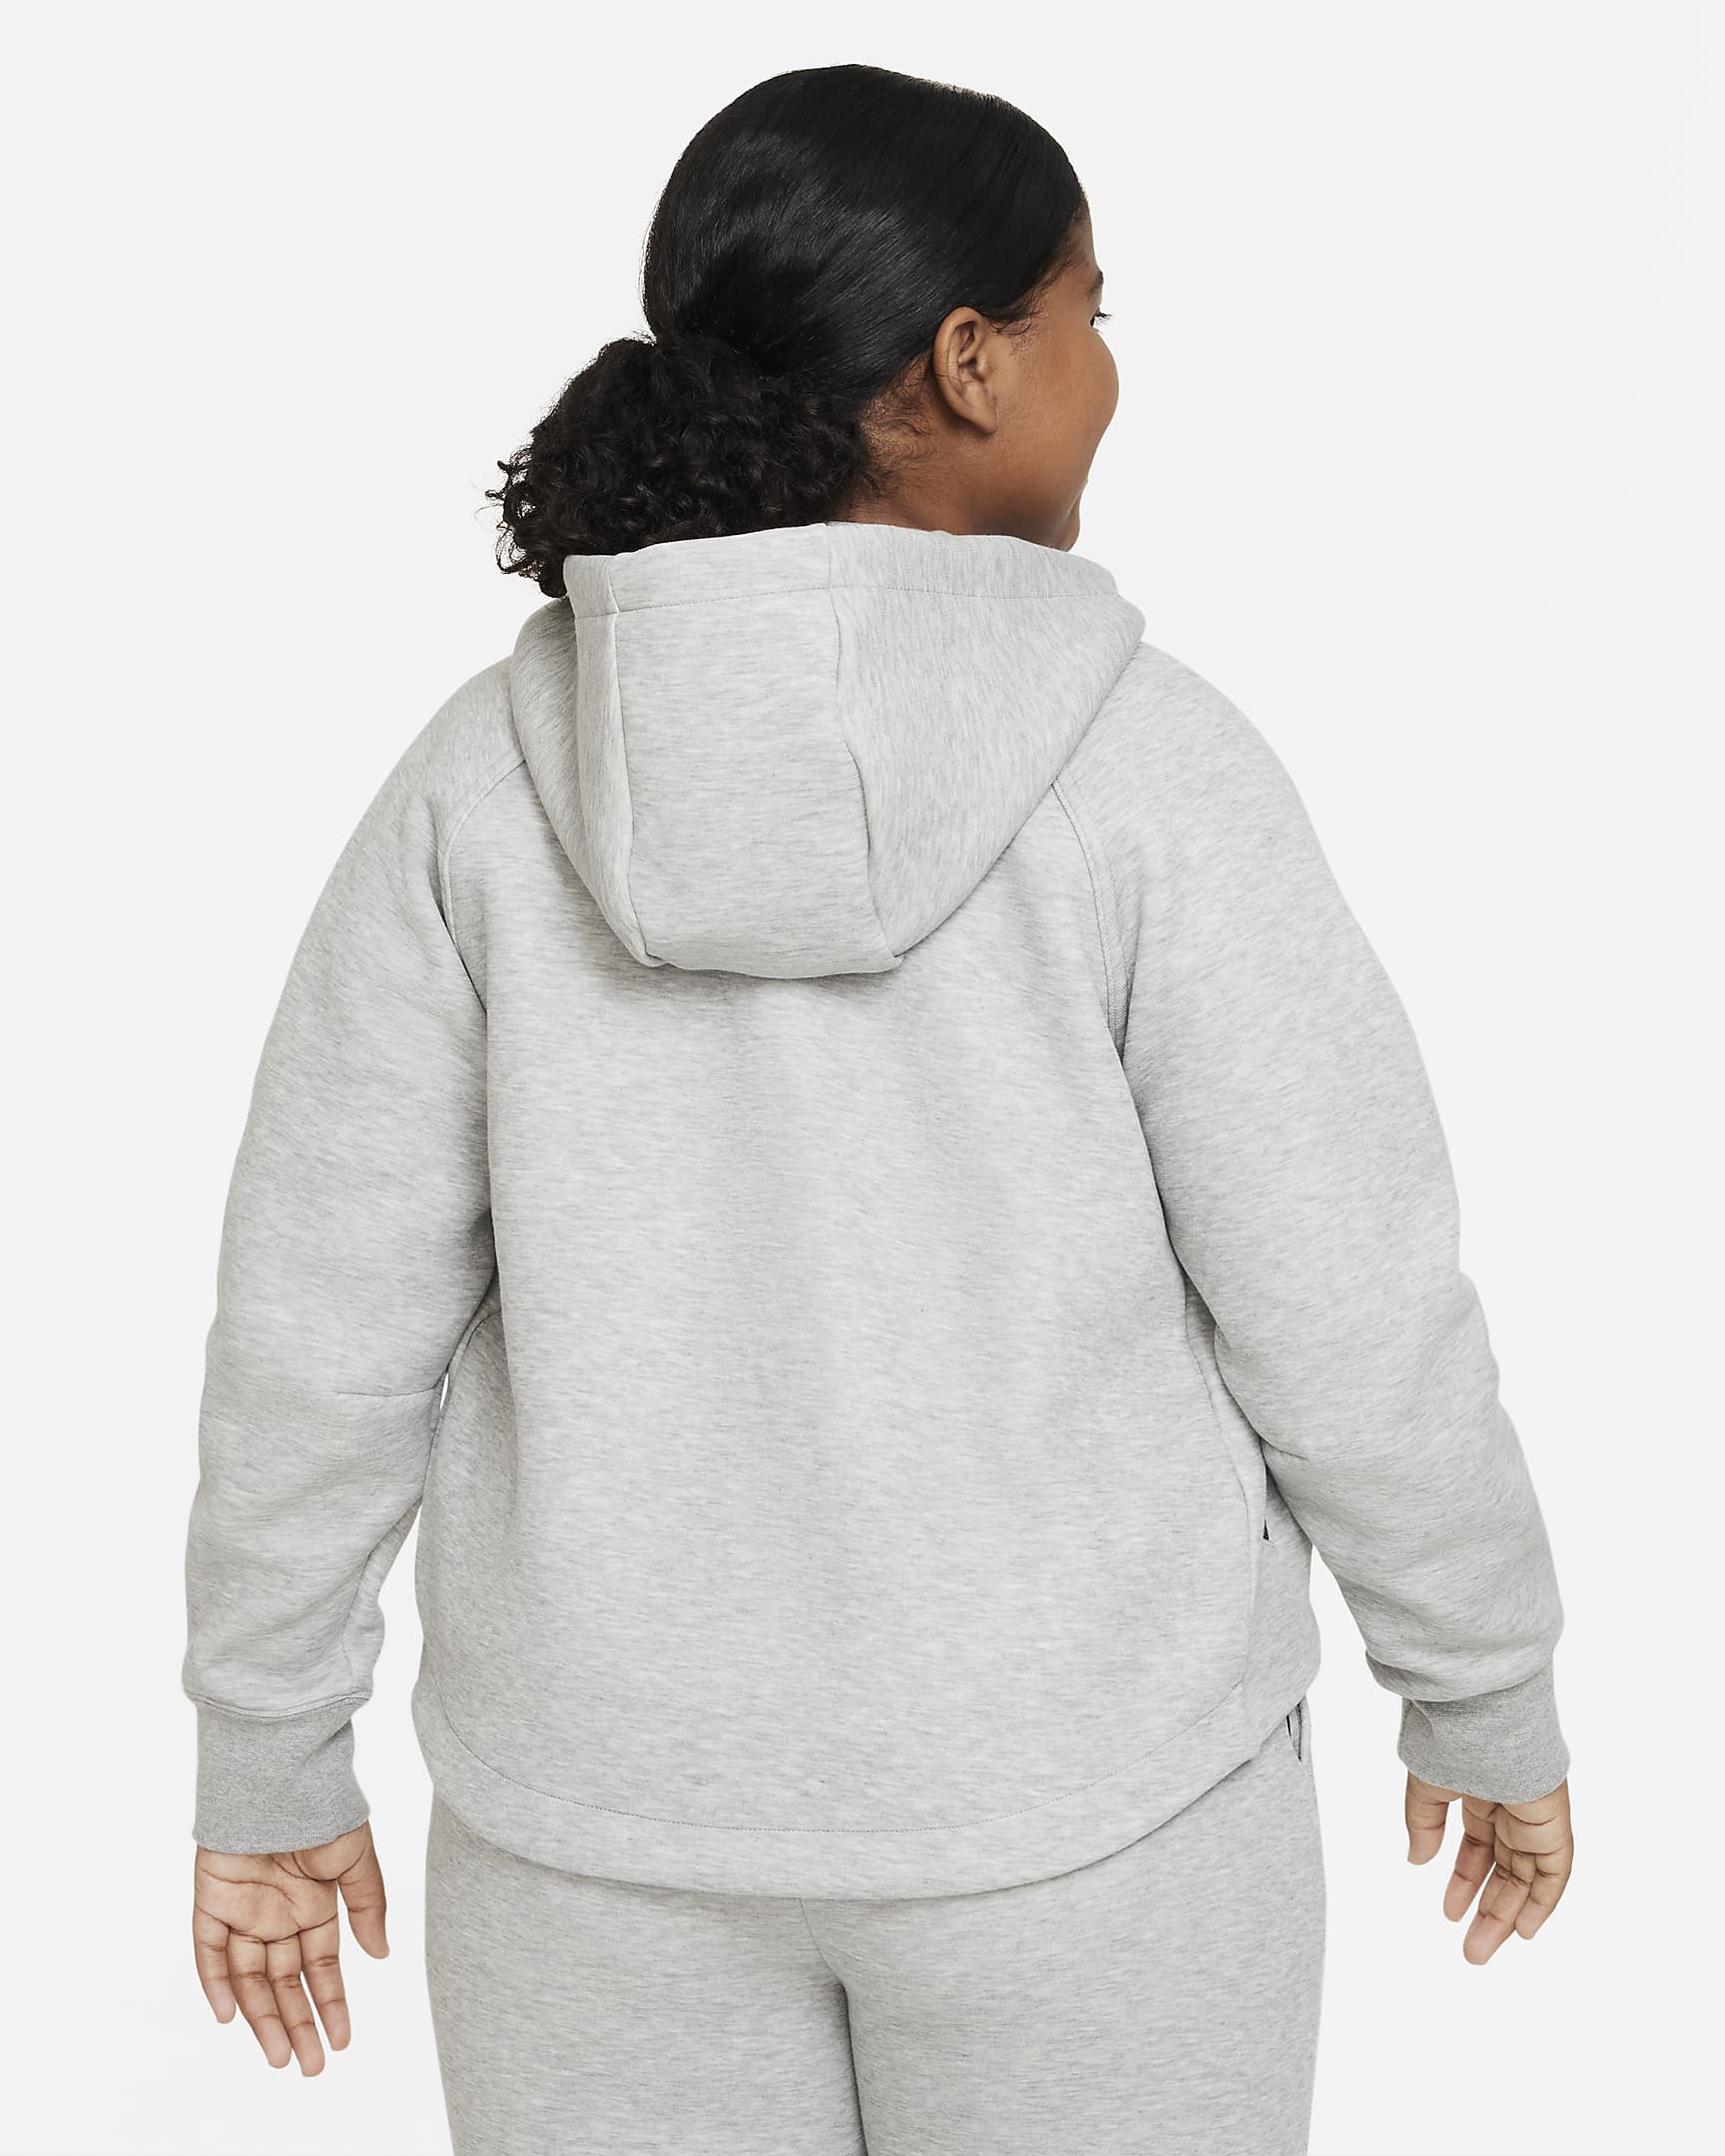 Nike Sportswear Tech Fleece Older Kids' (Girls') Full-Zip Hoodie (Extended Size) - Dark Grey Heather/Black/Black